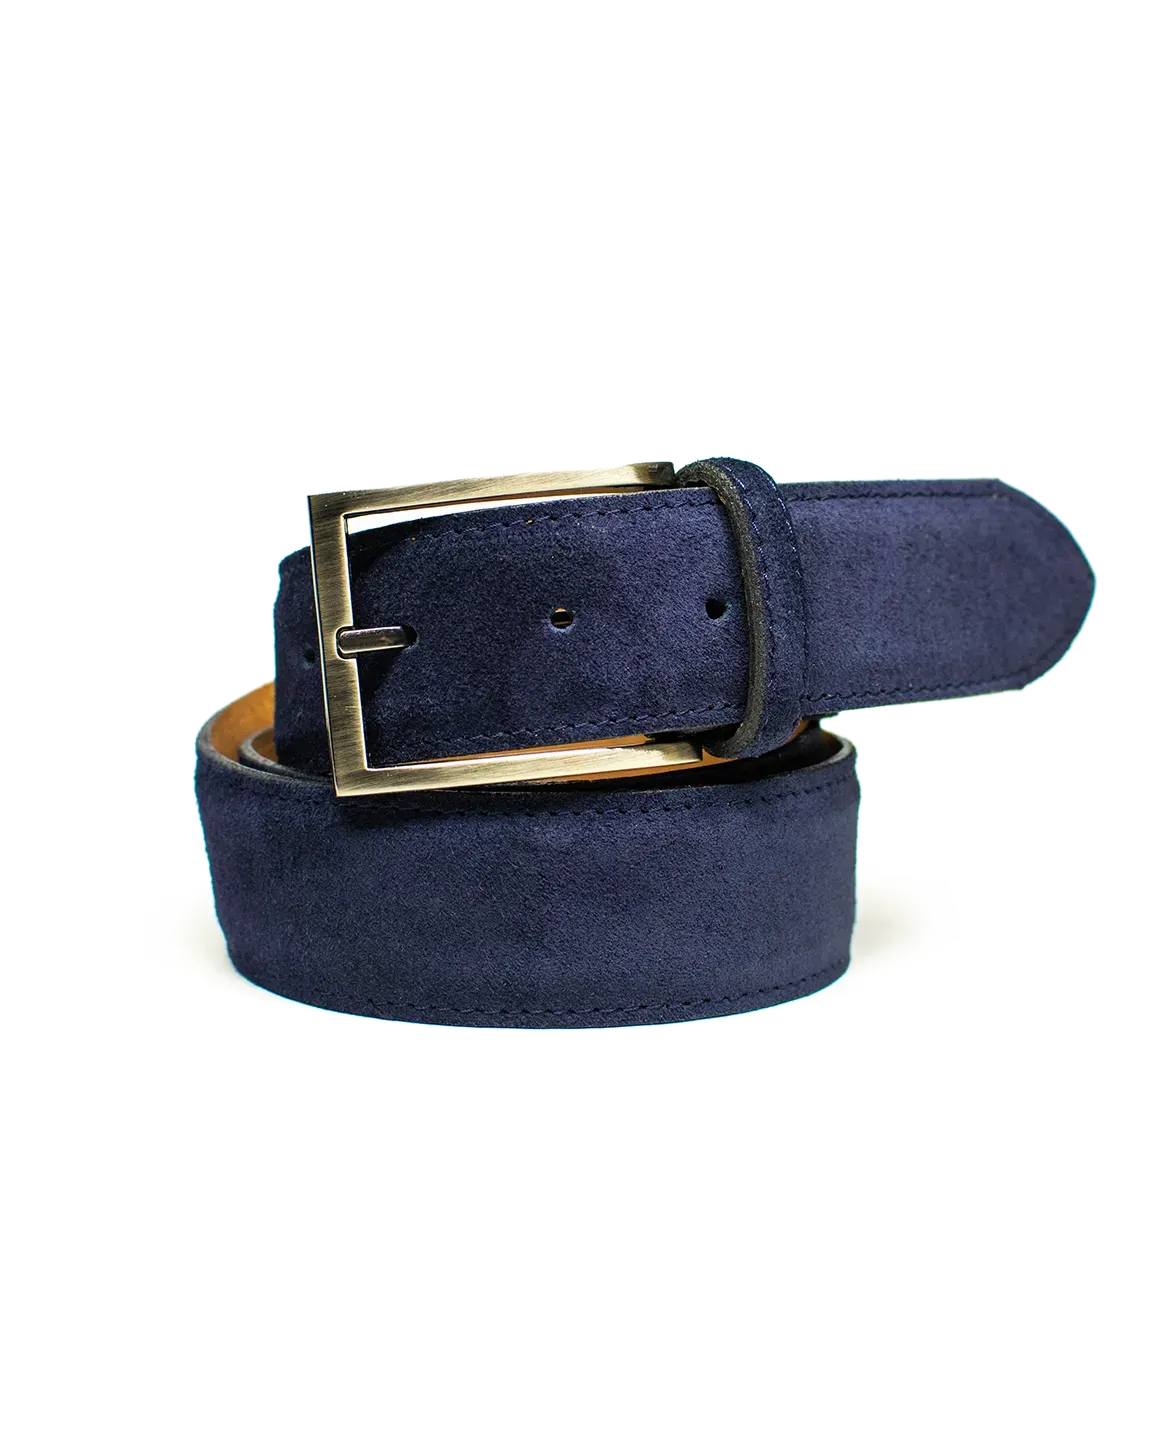 Cinturón Clásico de Gamuza en color azul